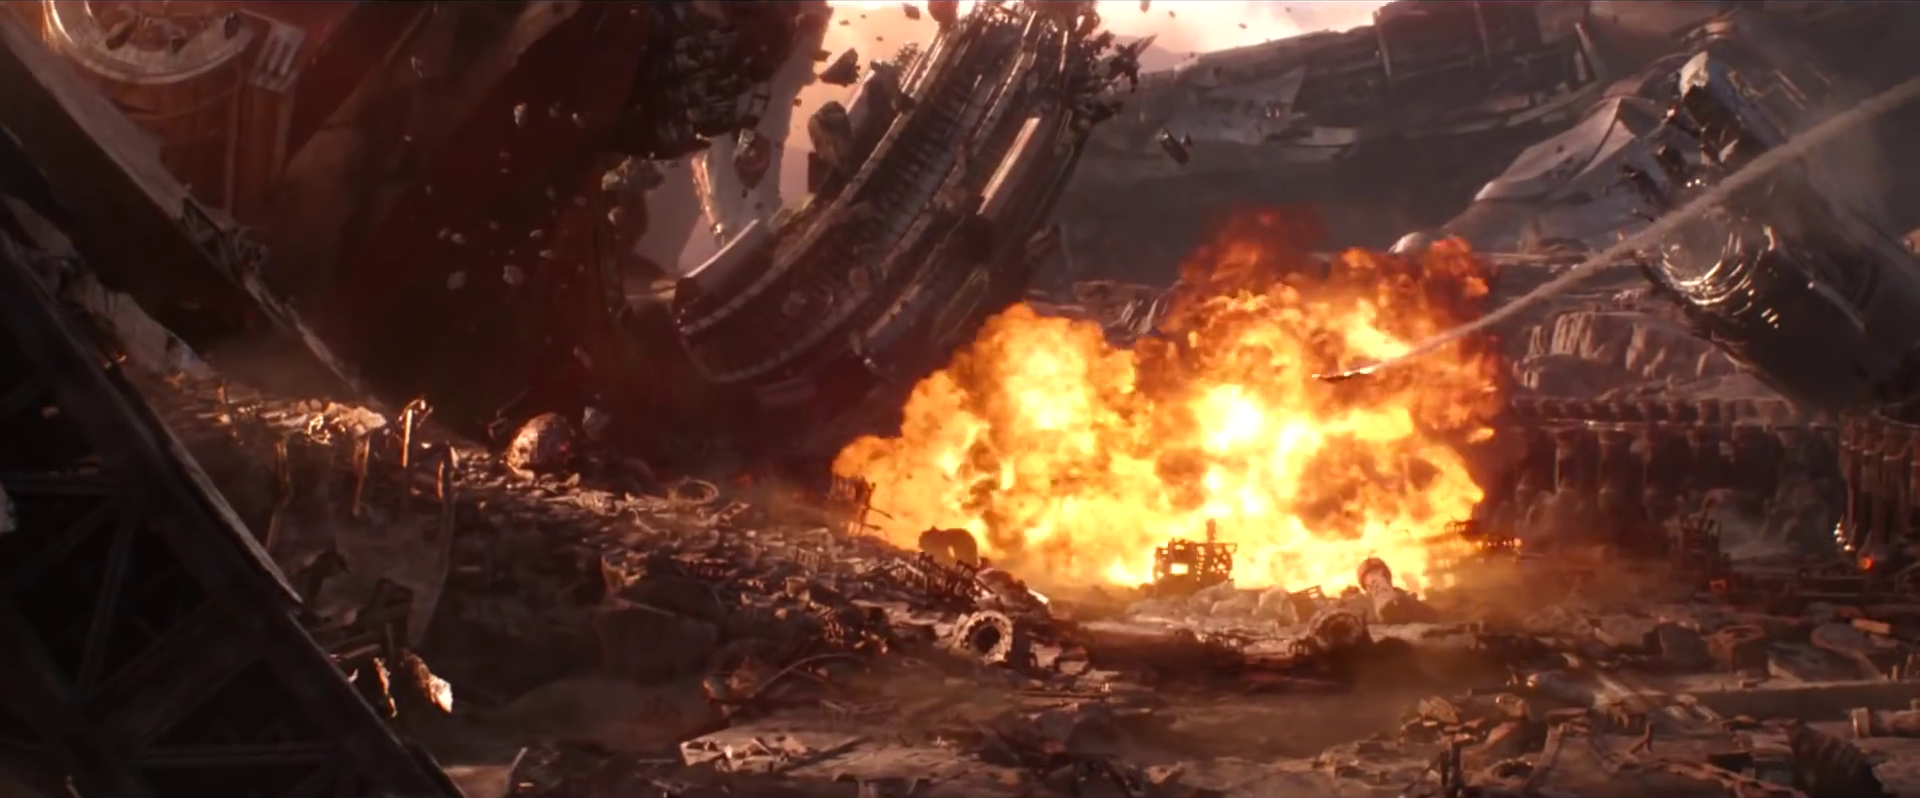 Cảnh Avengers đánh nhau với Thanos trên hành tinh Titan rò rỉ